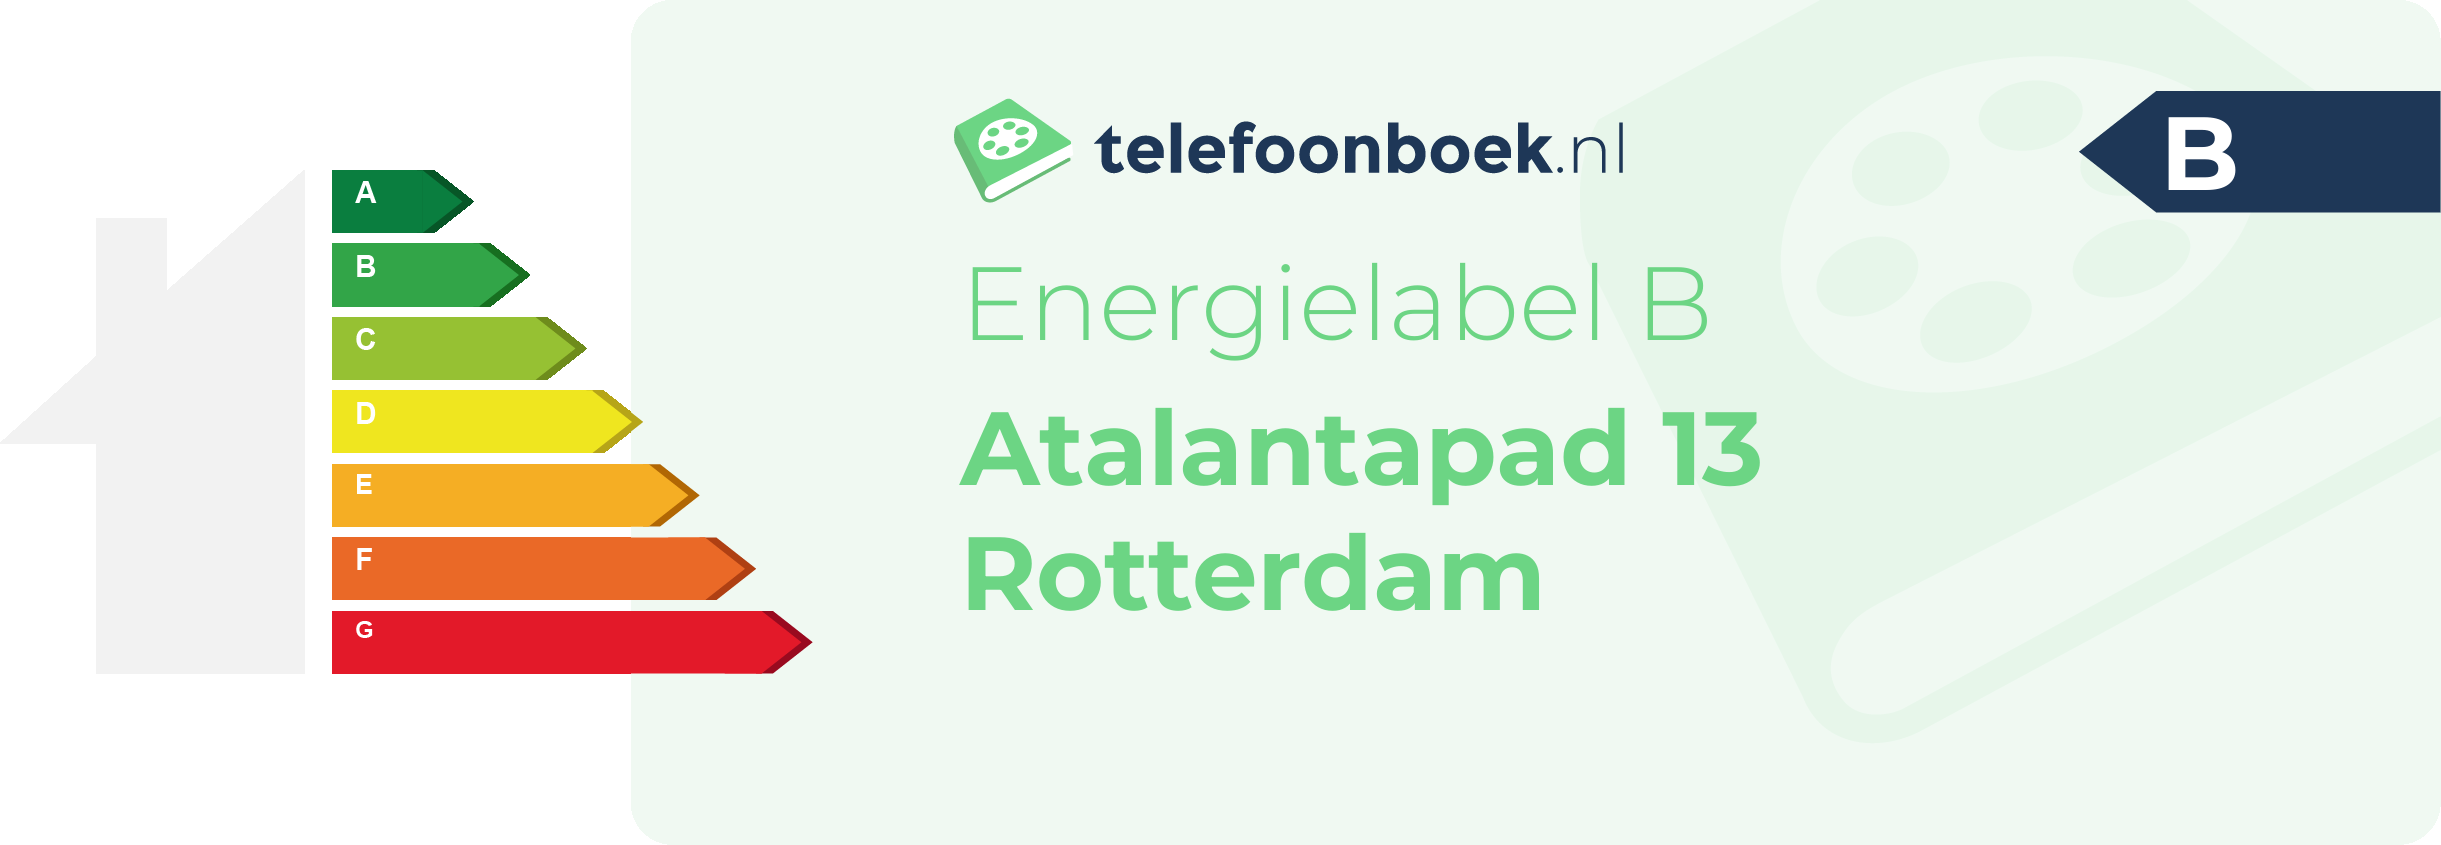 Energielabel Atalantapad 13 Rotterdam